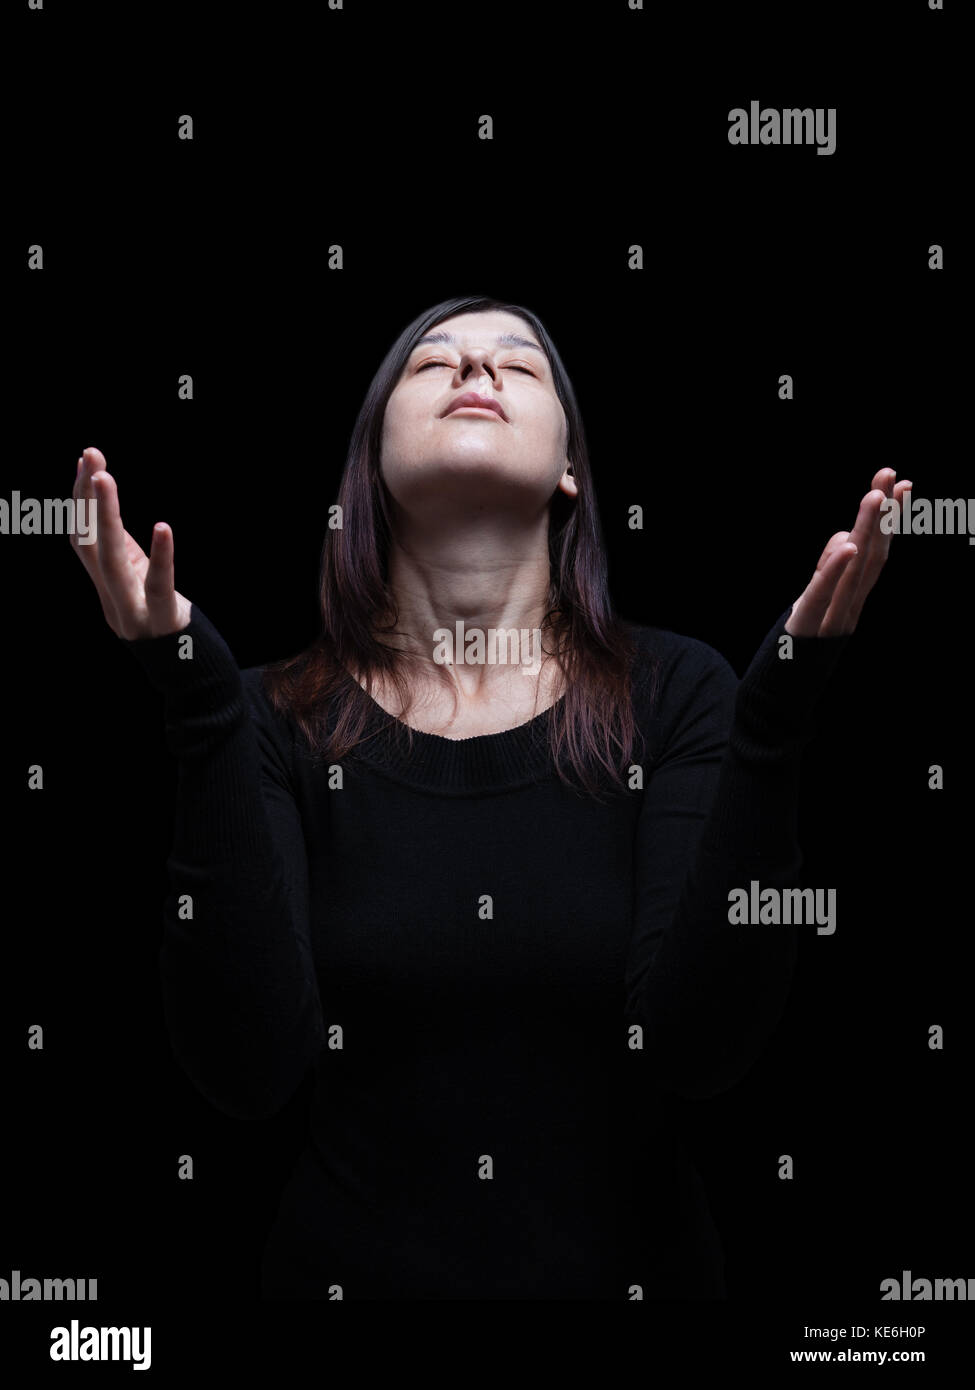 Lutto donna orante con le braccia aperte nel culto a Dio. cercando fino a occhi chiusi nella sofferenza. Sfondo nero / fede triste dolore lutto Foto Stock